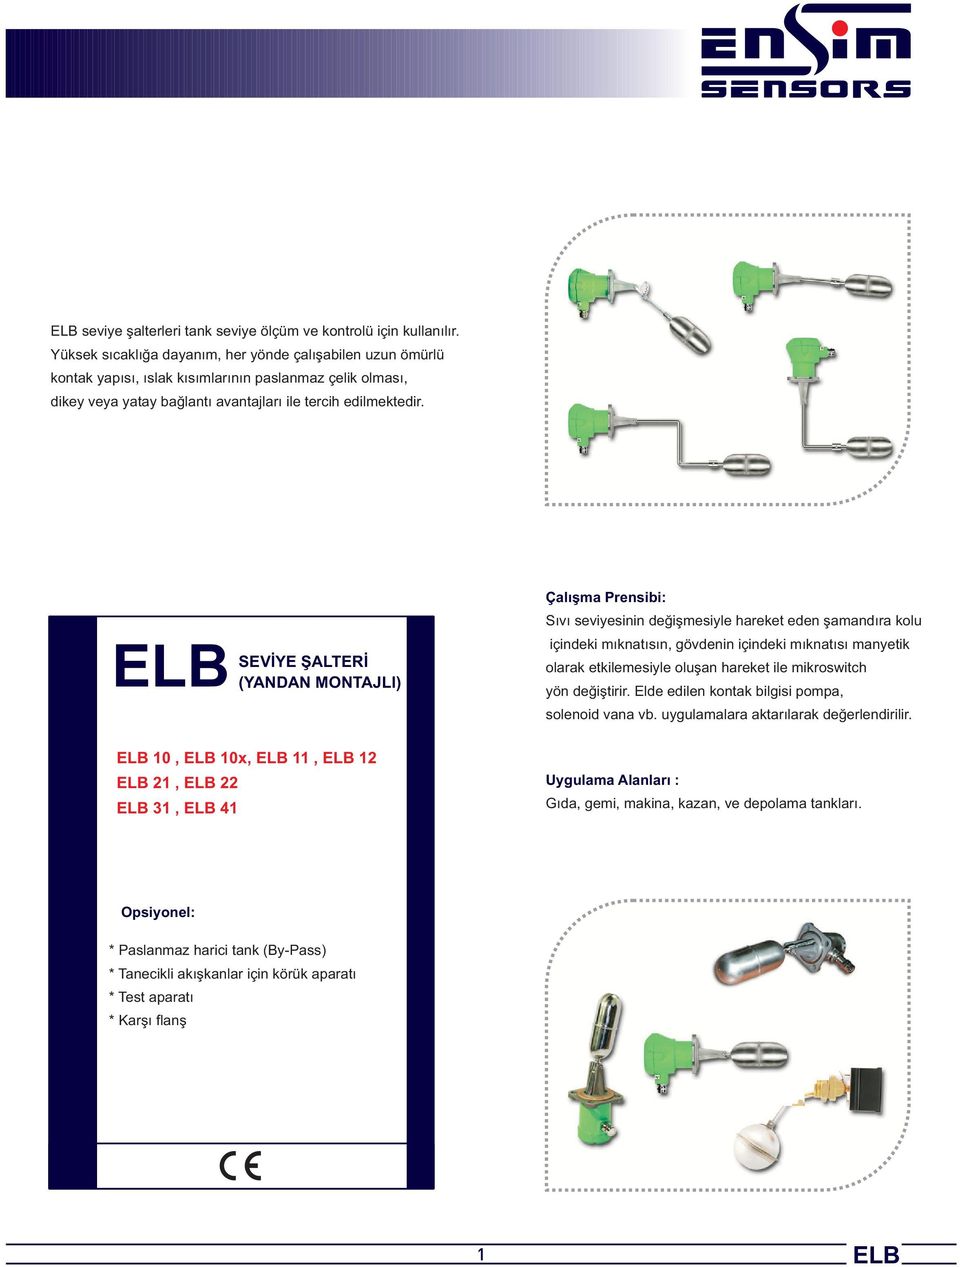 EB EB 10, EB 10x, EB 11, EB 12 EB 21, EB 22 EB 31, EB 41 SEVİYE ŞATERİ (YANDAN MONTAJI) Çalışma Prensibi: Sıvı seviyesinin değişmesiyle areket eden şamandıra kolu içindeki mıknatısın, gövdenin